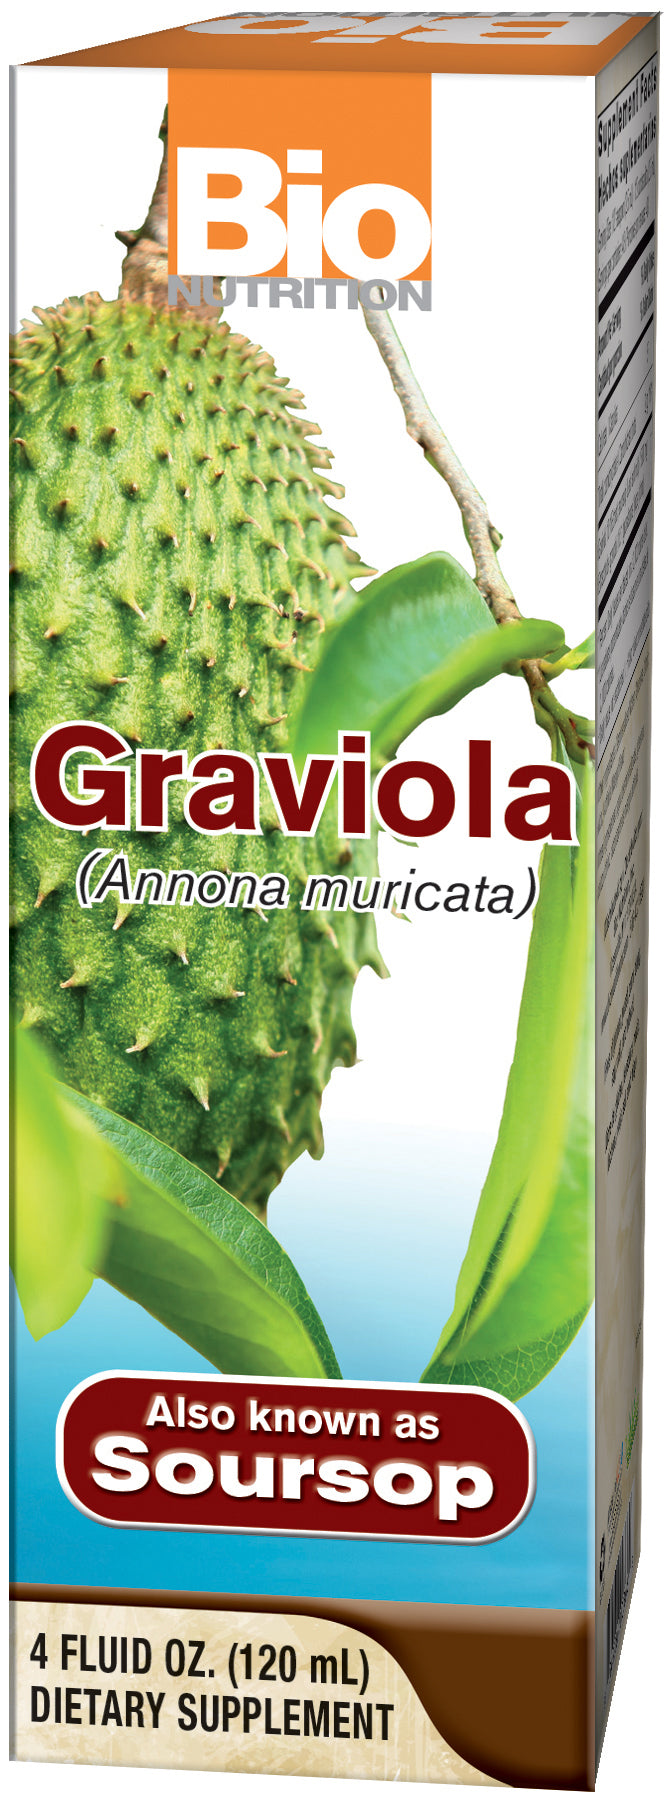 Graviola 4 fl oz (120 ml) by Bio Nutrition best price